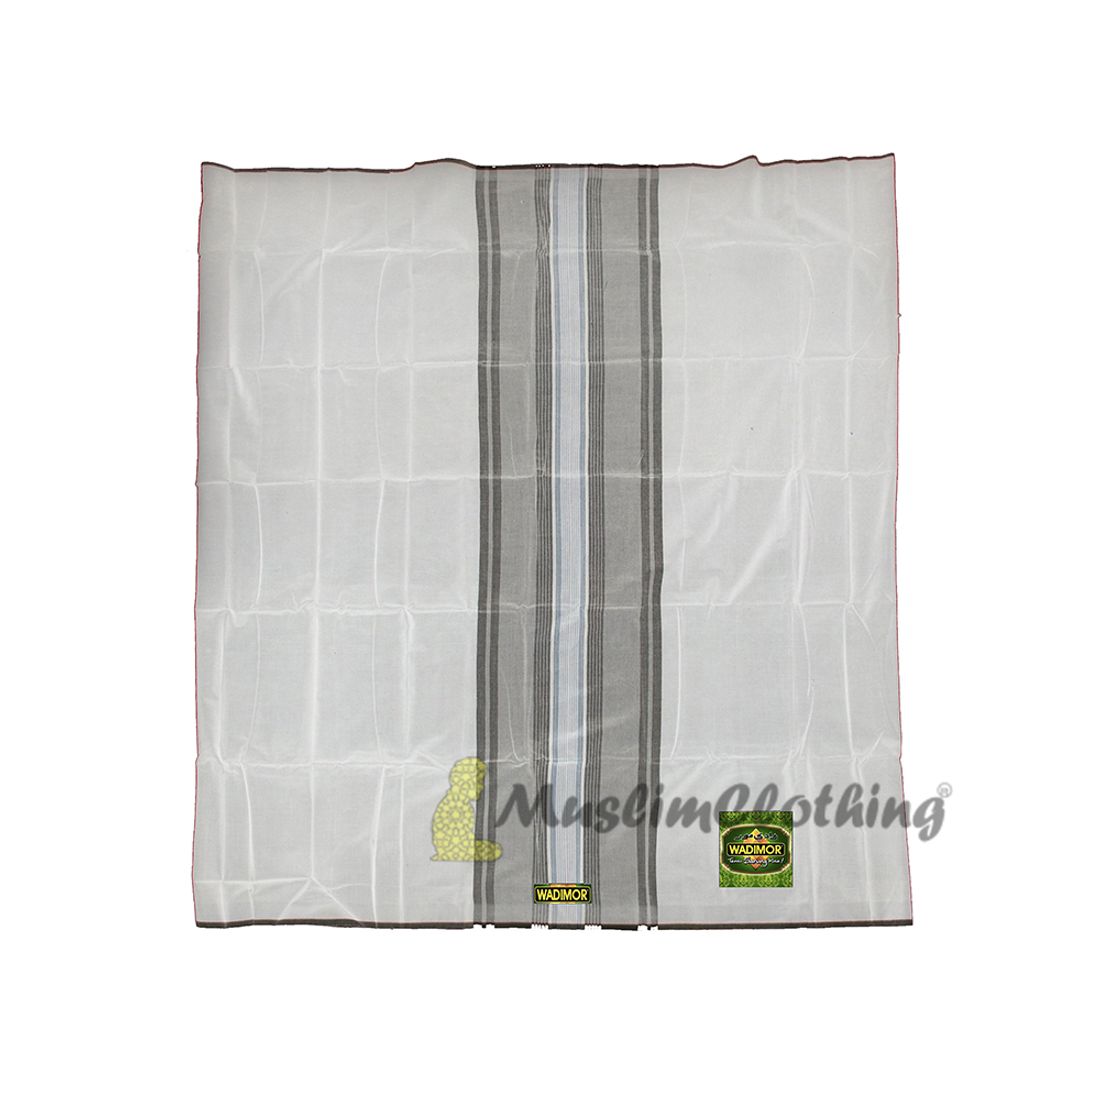 Wadimor White One-Size Men’s Sunnah Izar Sarong Sarung Lungi Cotton Fine Fabric Wadimor Sewn Tube Design